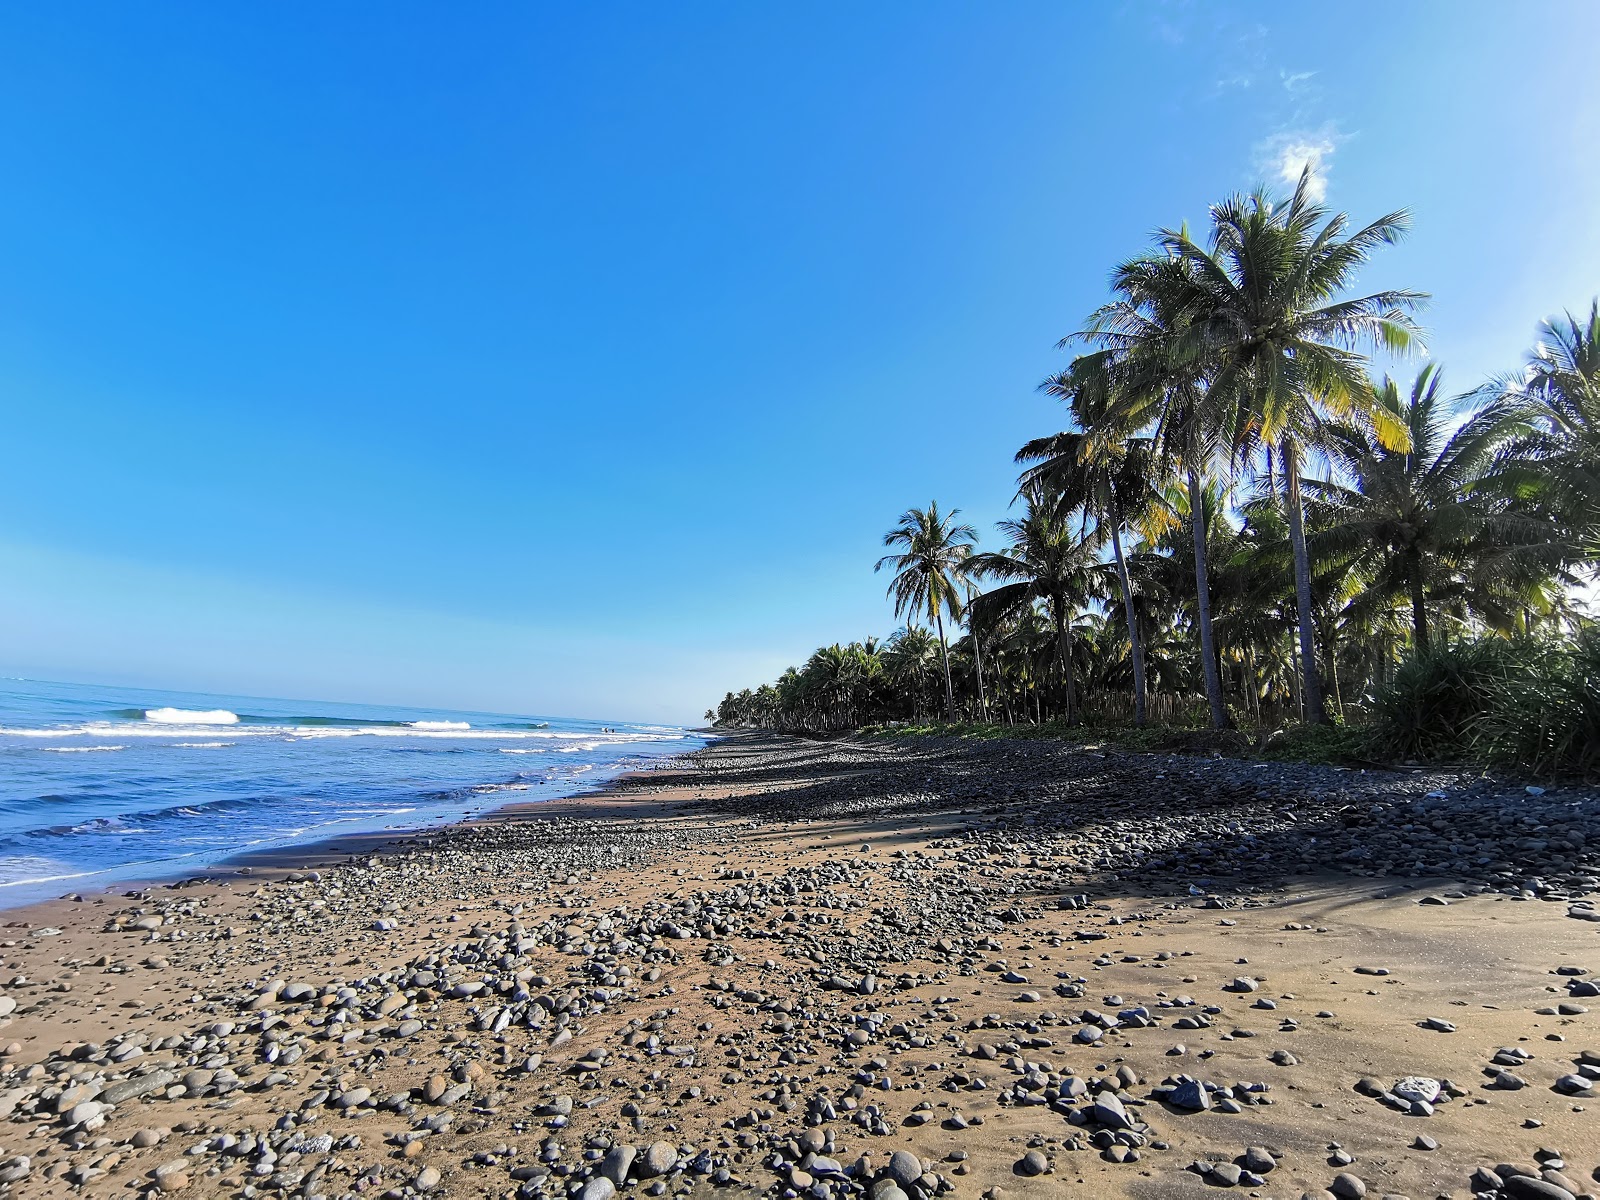 Zdjęcie Gevela's Beach z powierzchnią piasek z kamykami